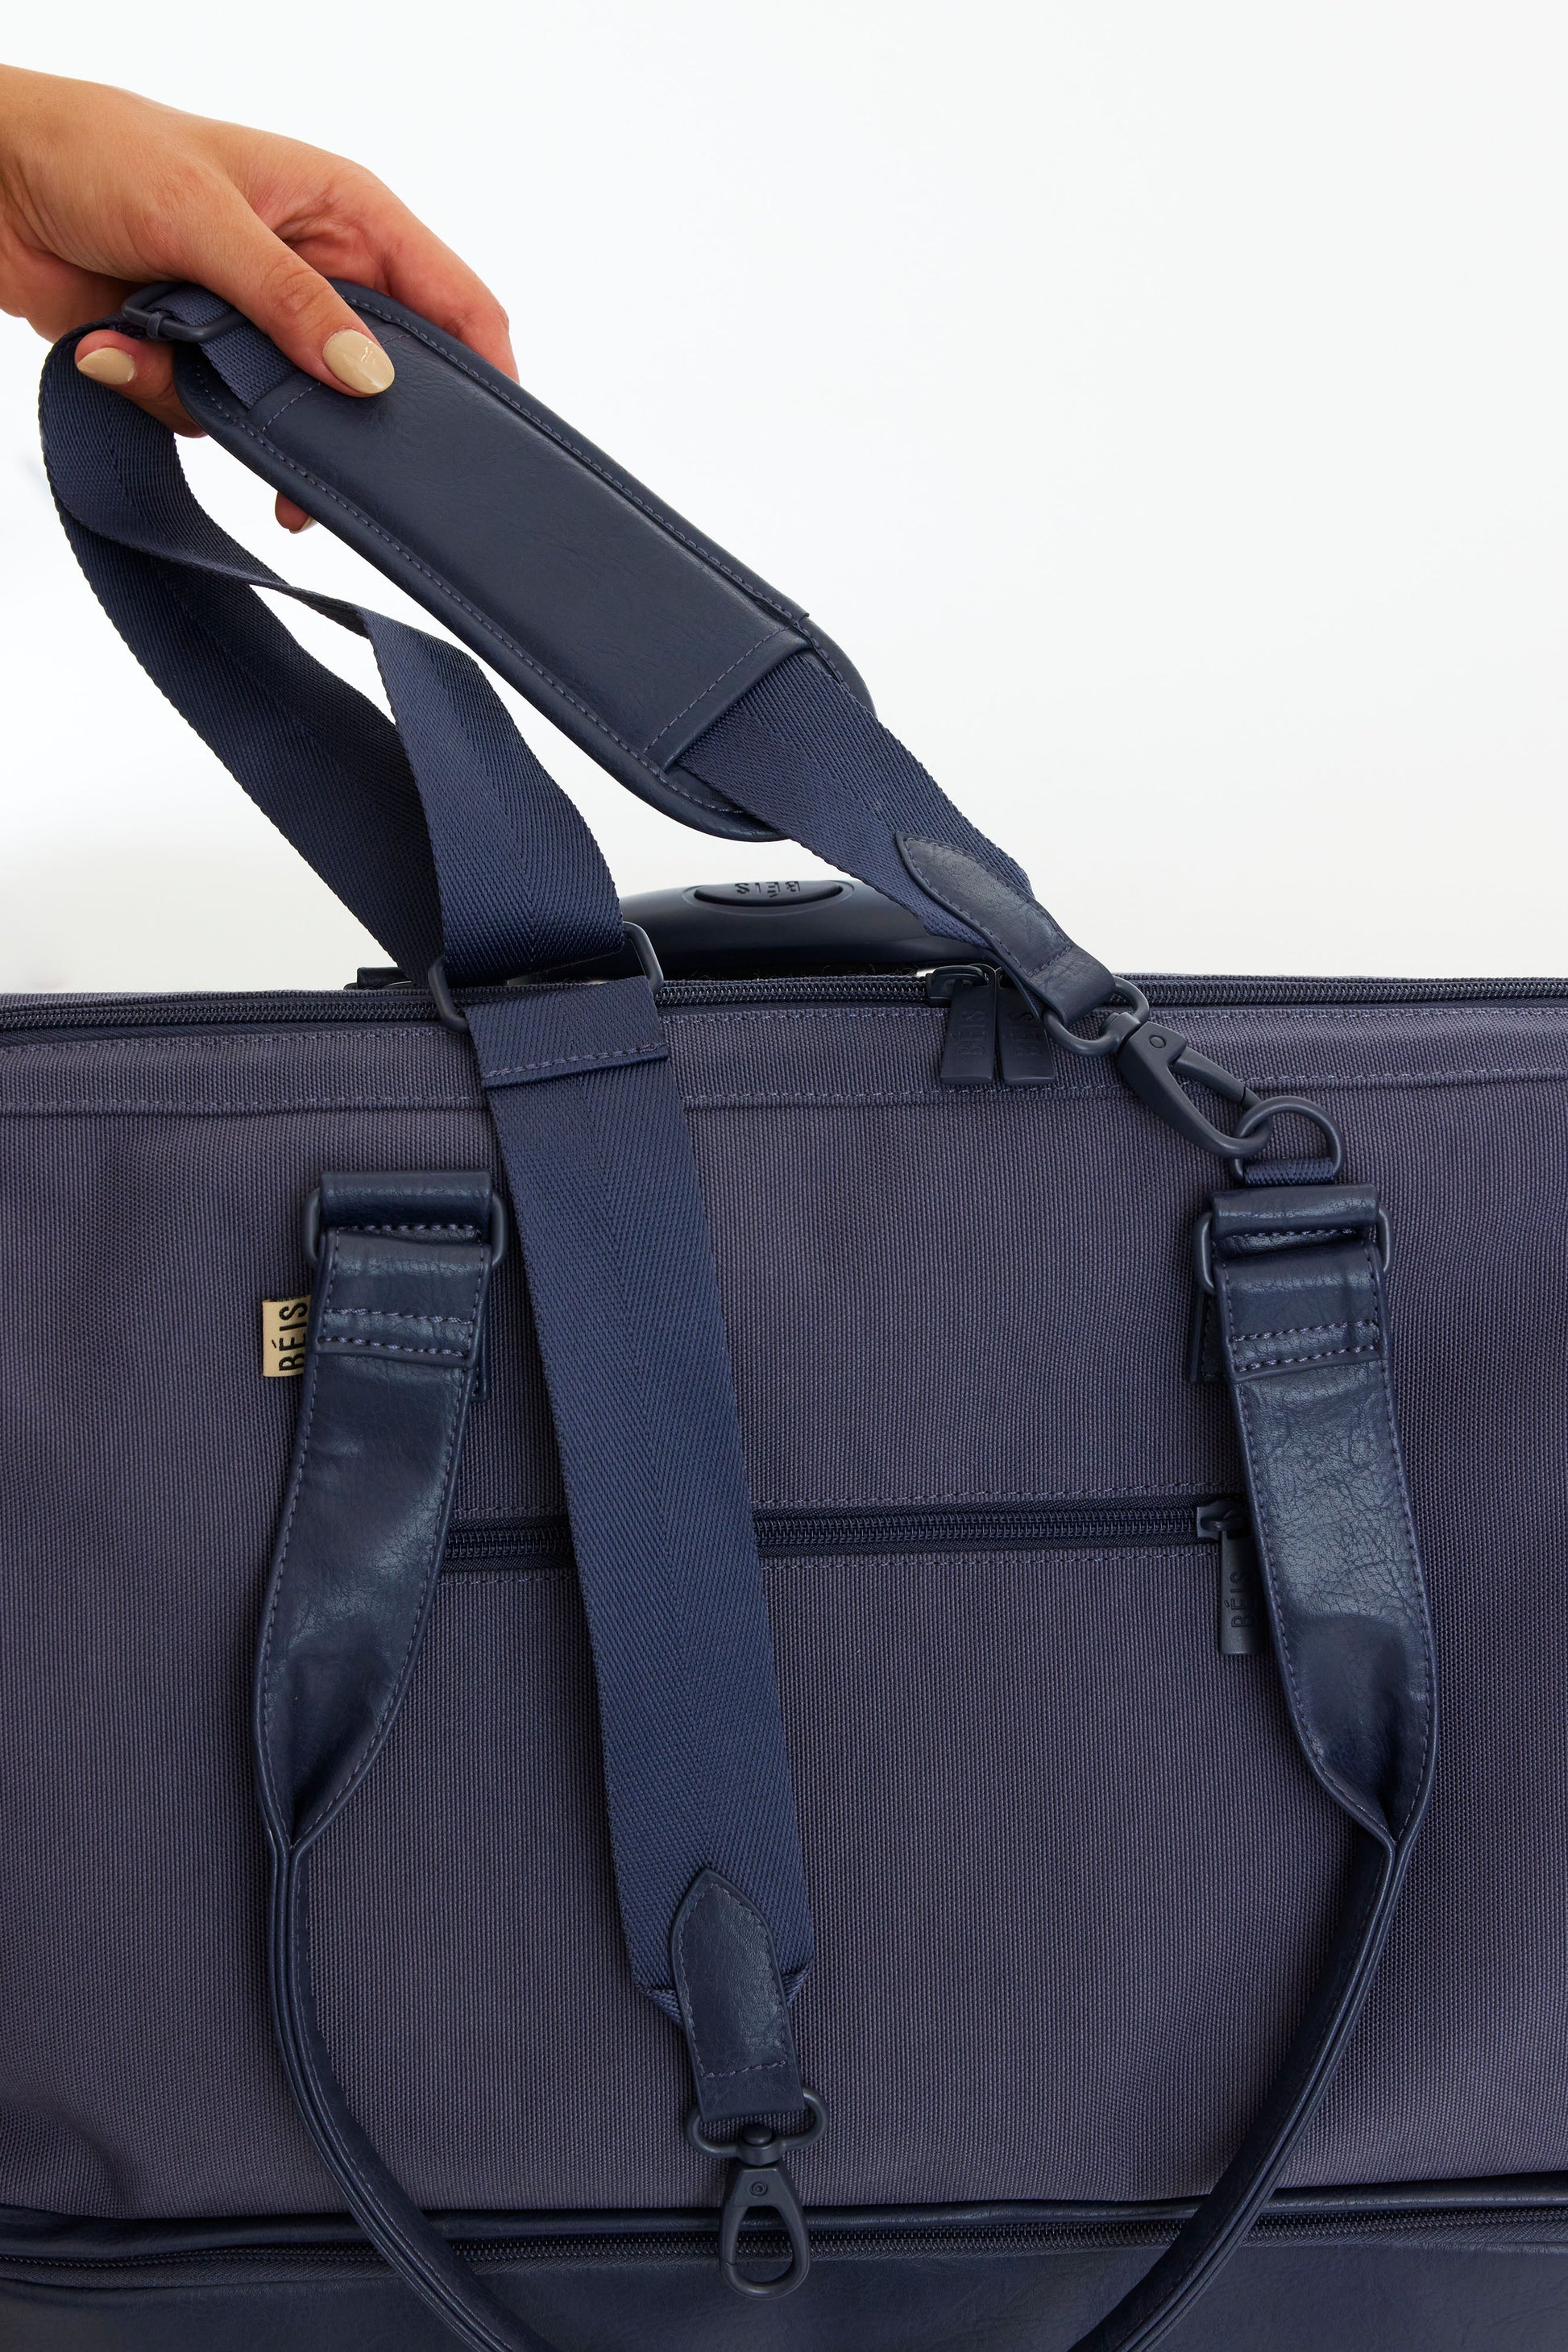 BÉIS 'The Weekender' in Navy - Small Blue Weekender Bag & Travel Duffle Bag